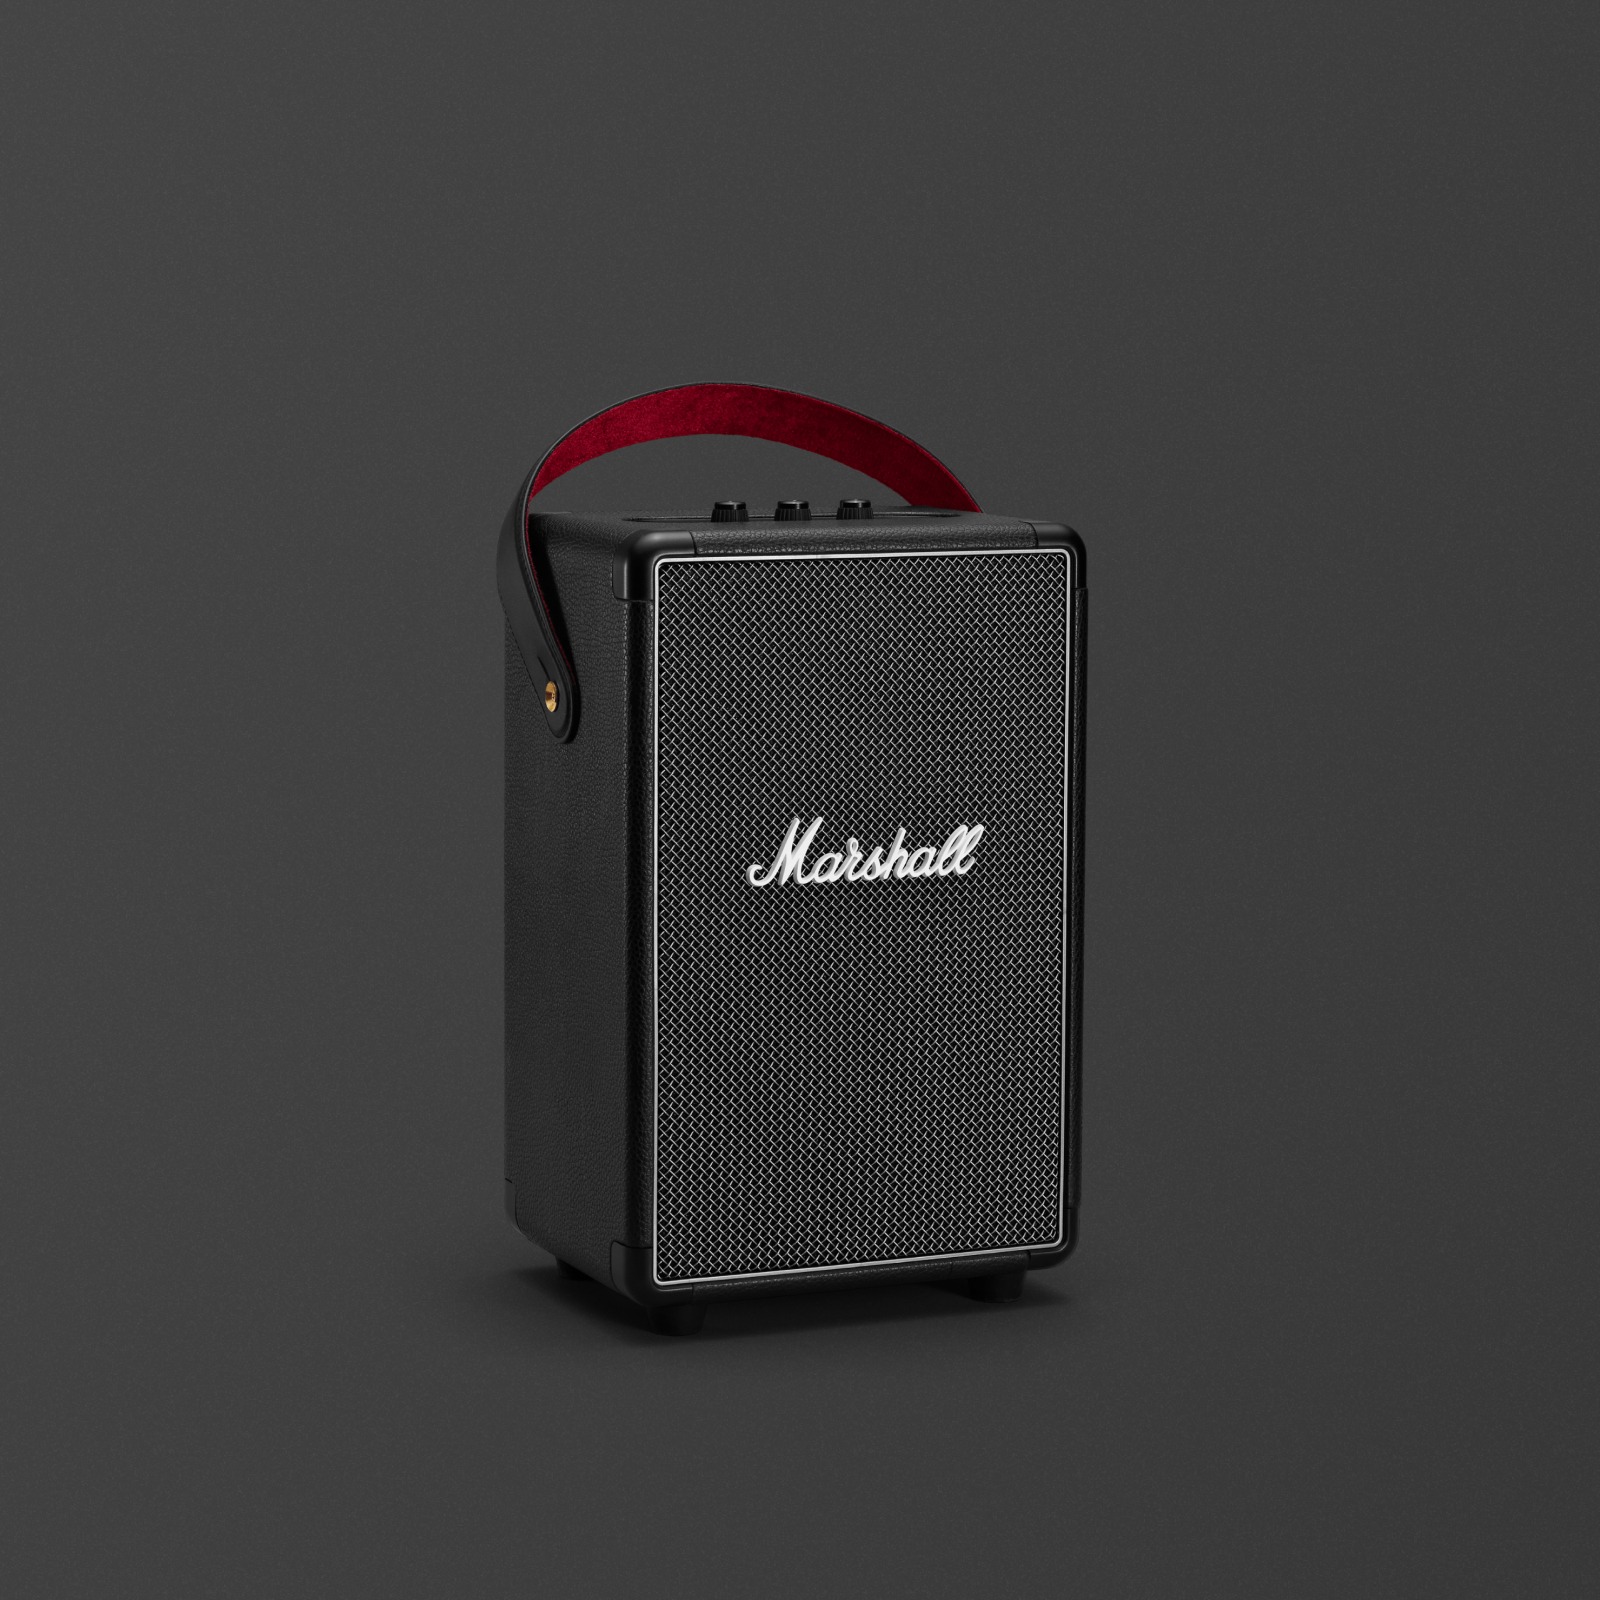 El Marshall TUFTON BLACK es un altavoz negro elegante y compacto que ofrece un sonido potente y nítido.